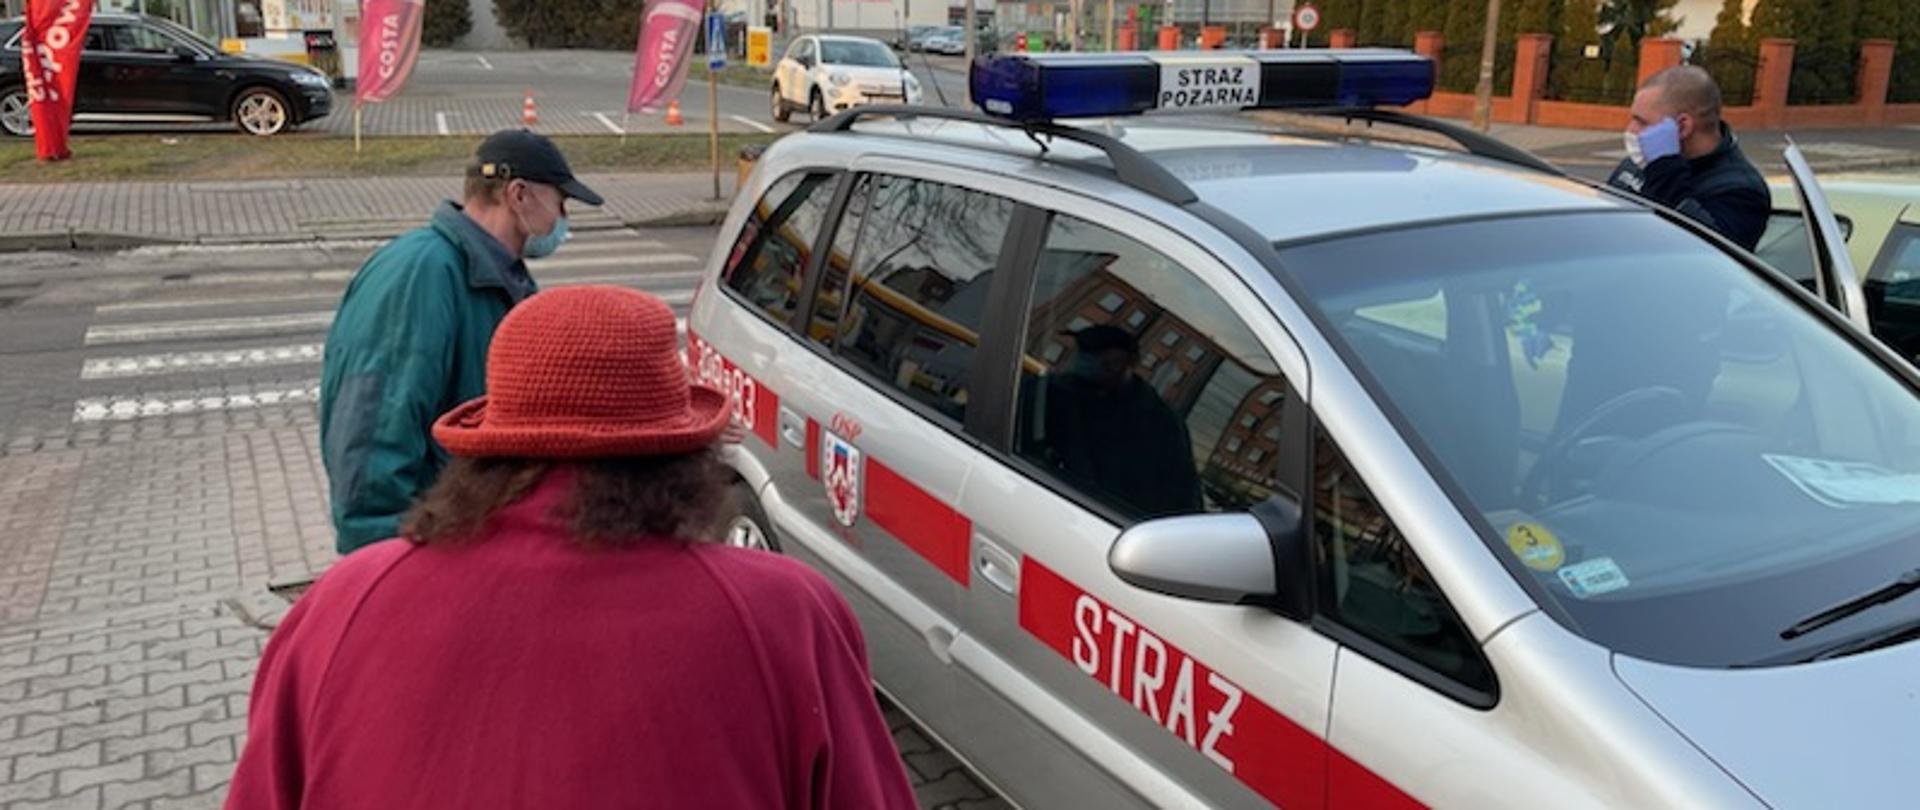 Samochód operacyjny jednostki OSP w Słubicach wraz z widocznym strażakiem OSP oraz dwiema osobami zmierzającymi do tego pojazdu.